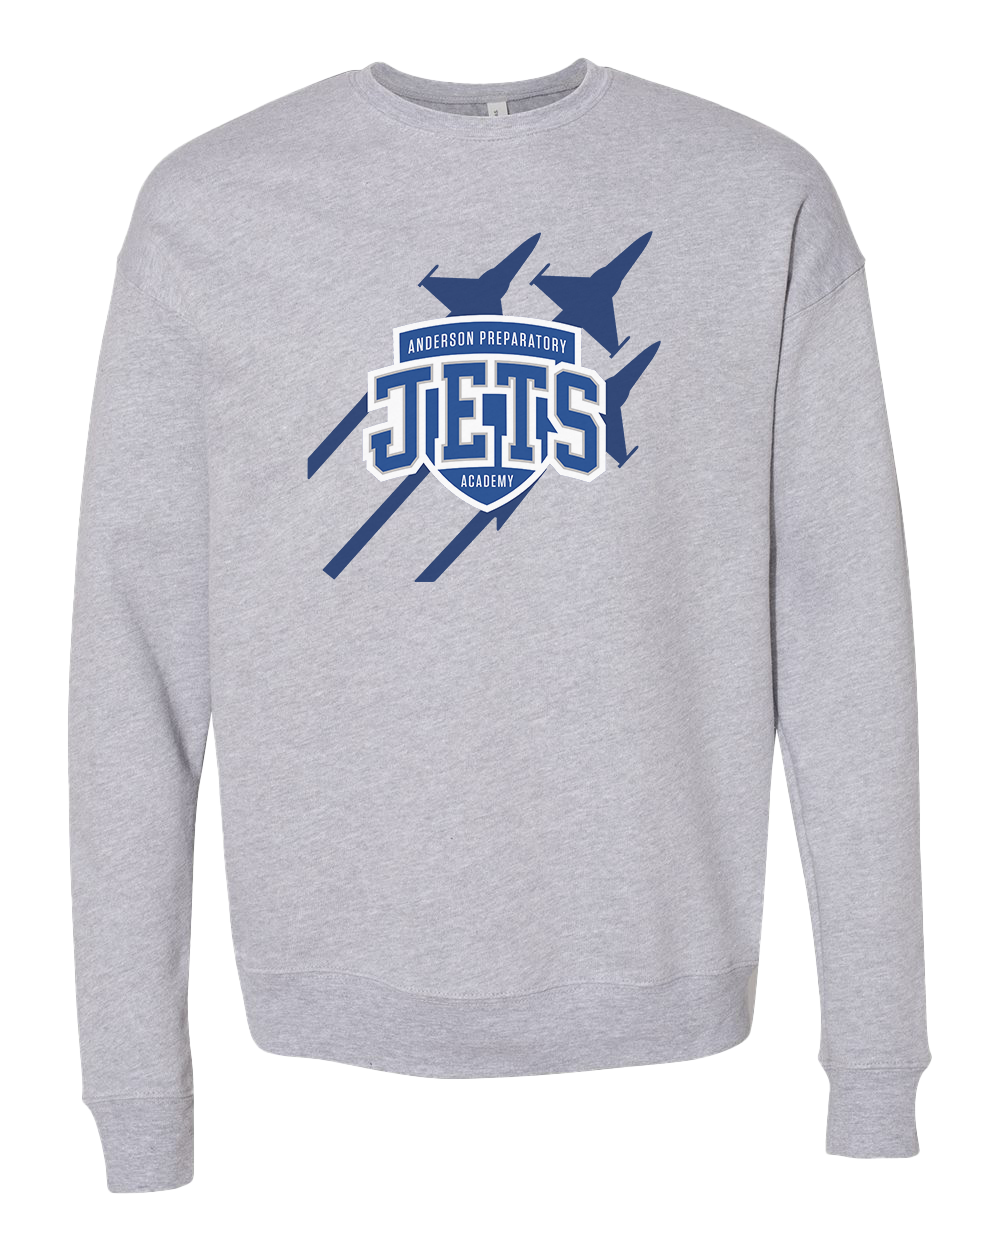 Anderson Preparatory Academy Jets Crew Sweatshirt - Athletic Grey